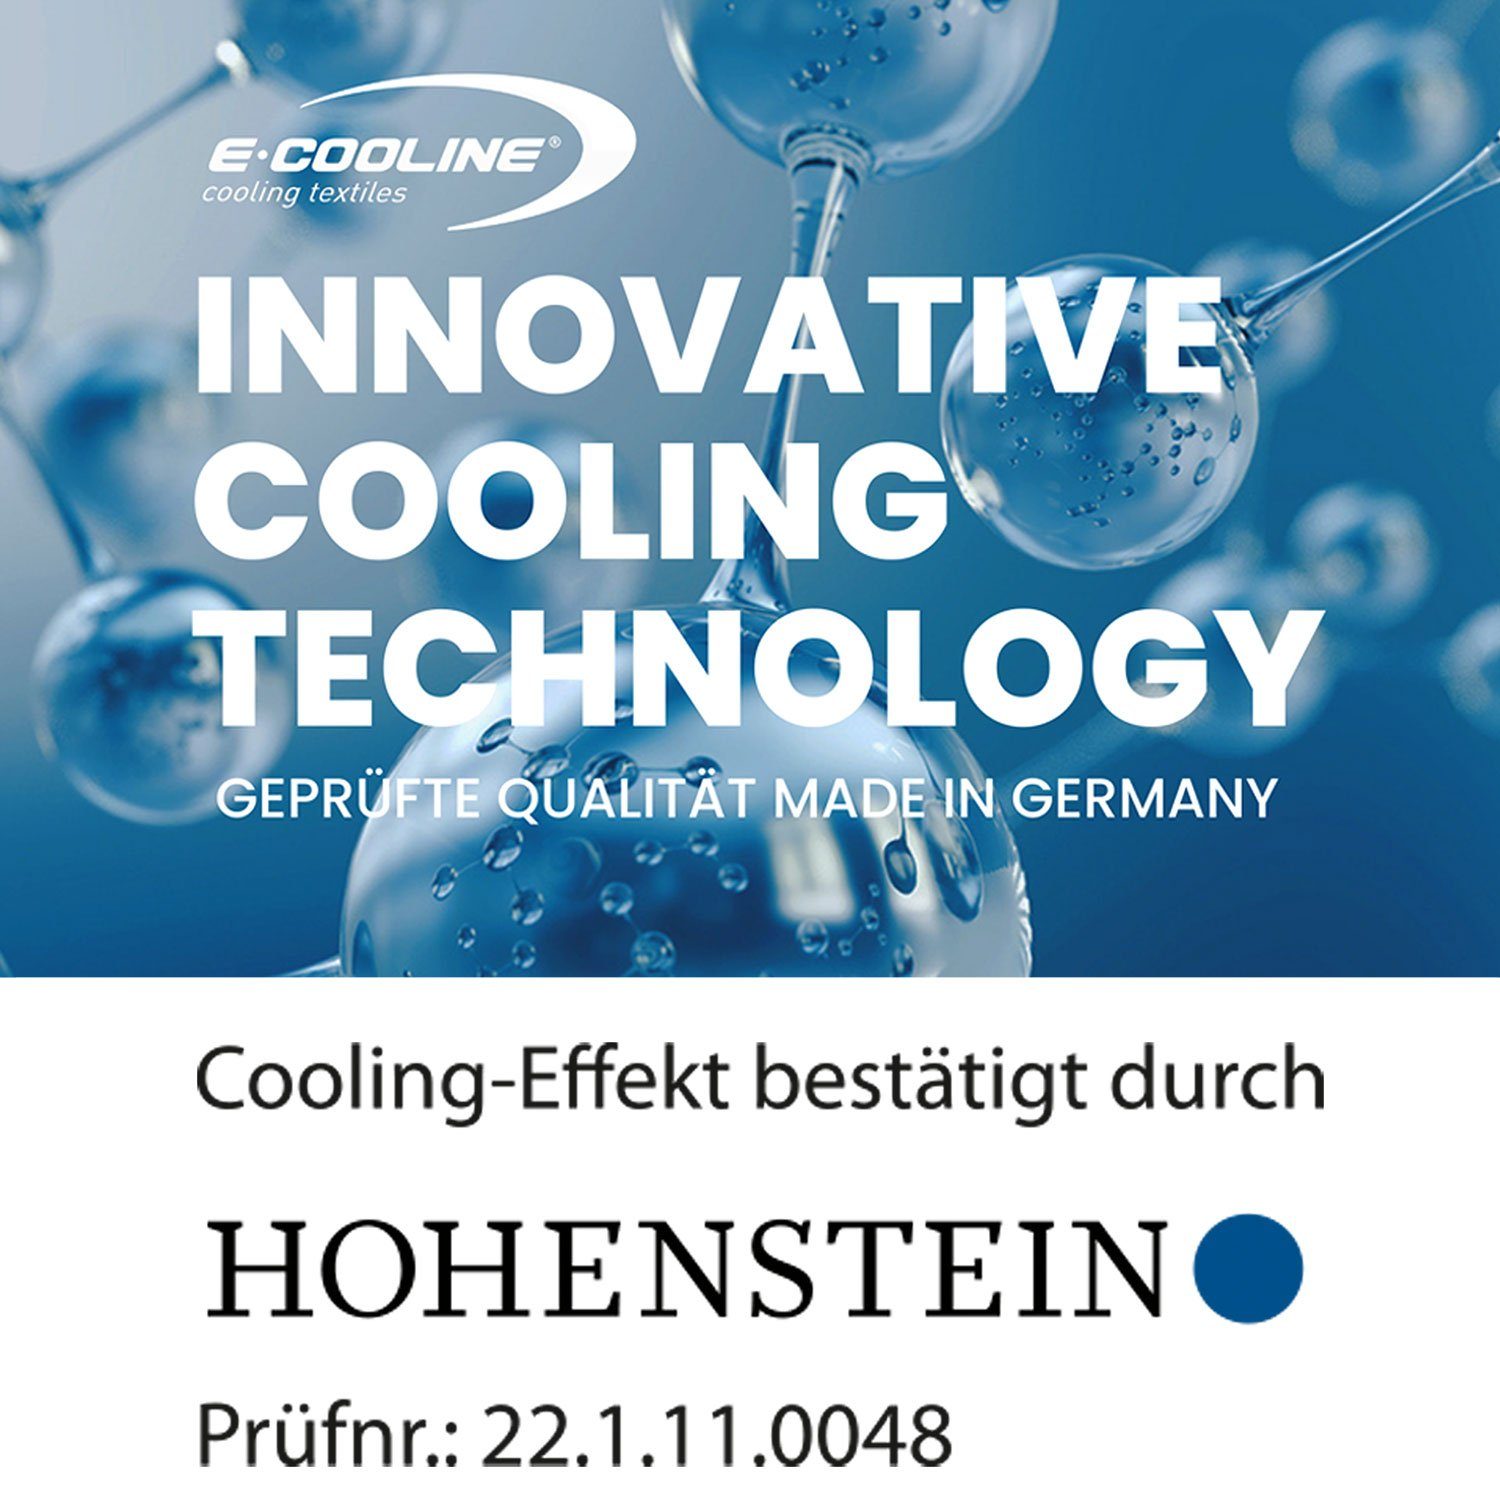 E.COOLINE Powercool mit Kühlfunktionskleidung durch Aktivierung -Beinkühlung SX3 Wasser Chaps Beinstulpen -Kühlung